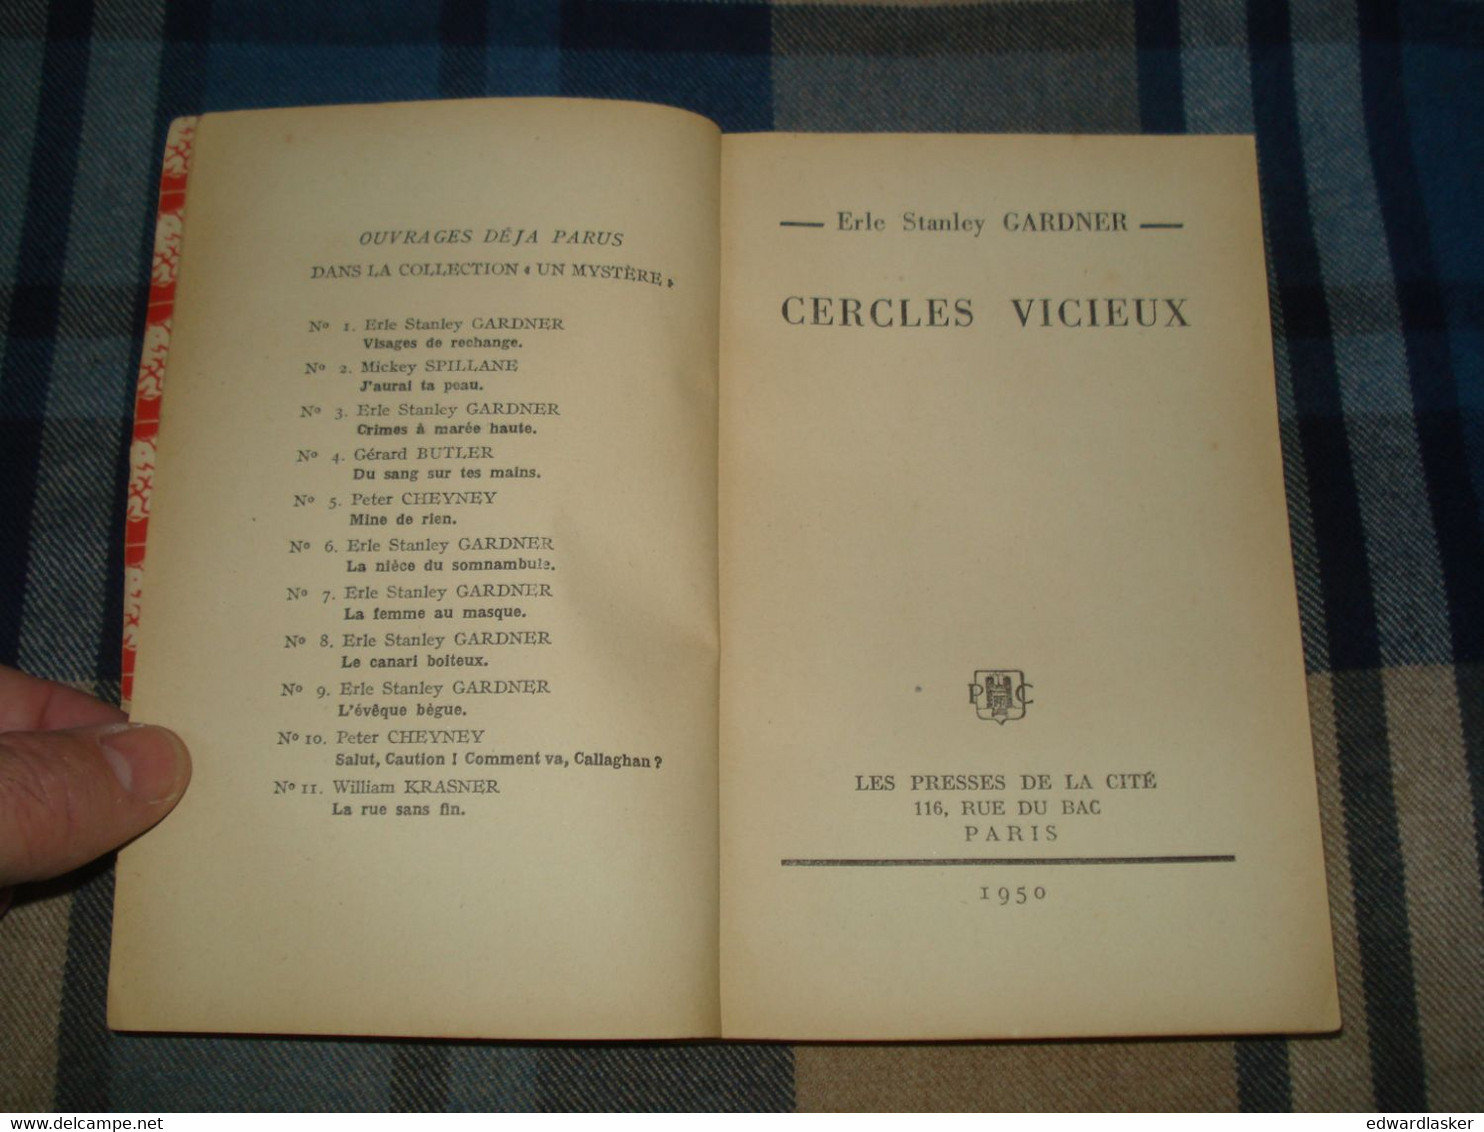 Un MYSTERE N°13 : CERCLES VICIEUX /Erle Stanley GARDNER - Octobre 1950 [2] - Presses De La Cité